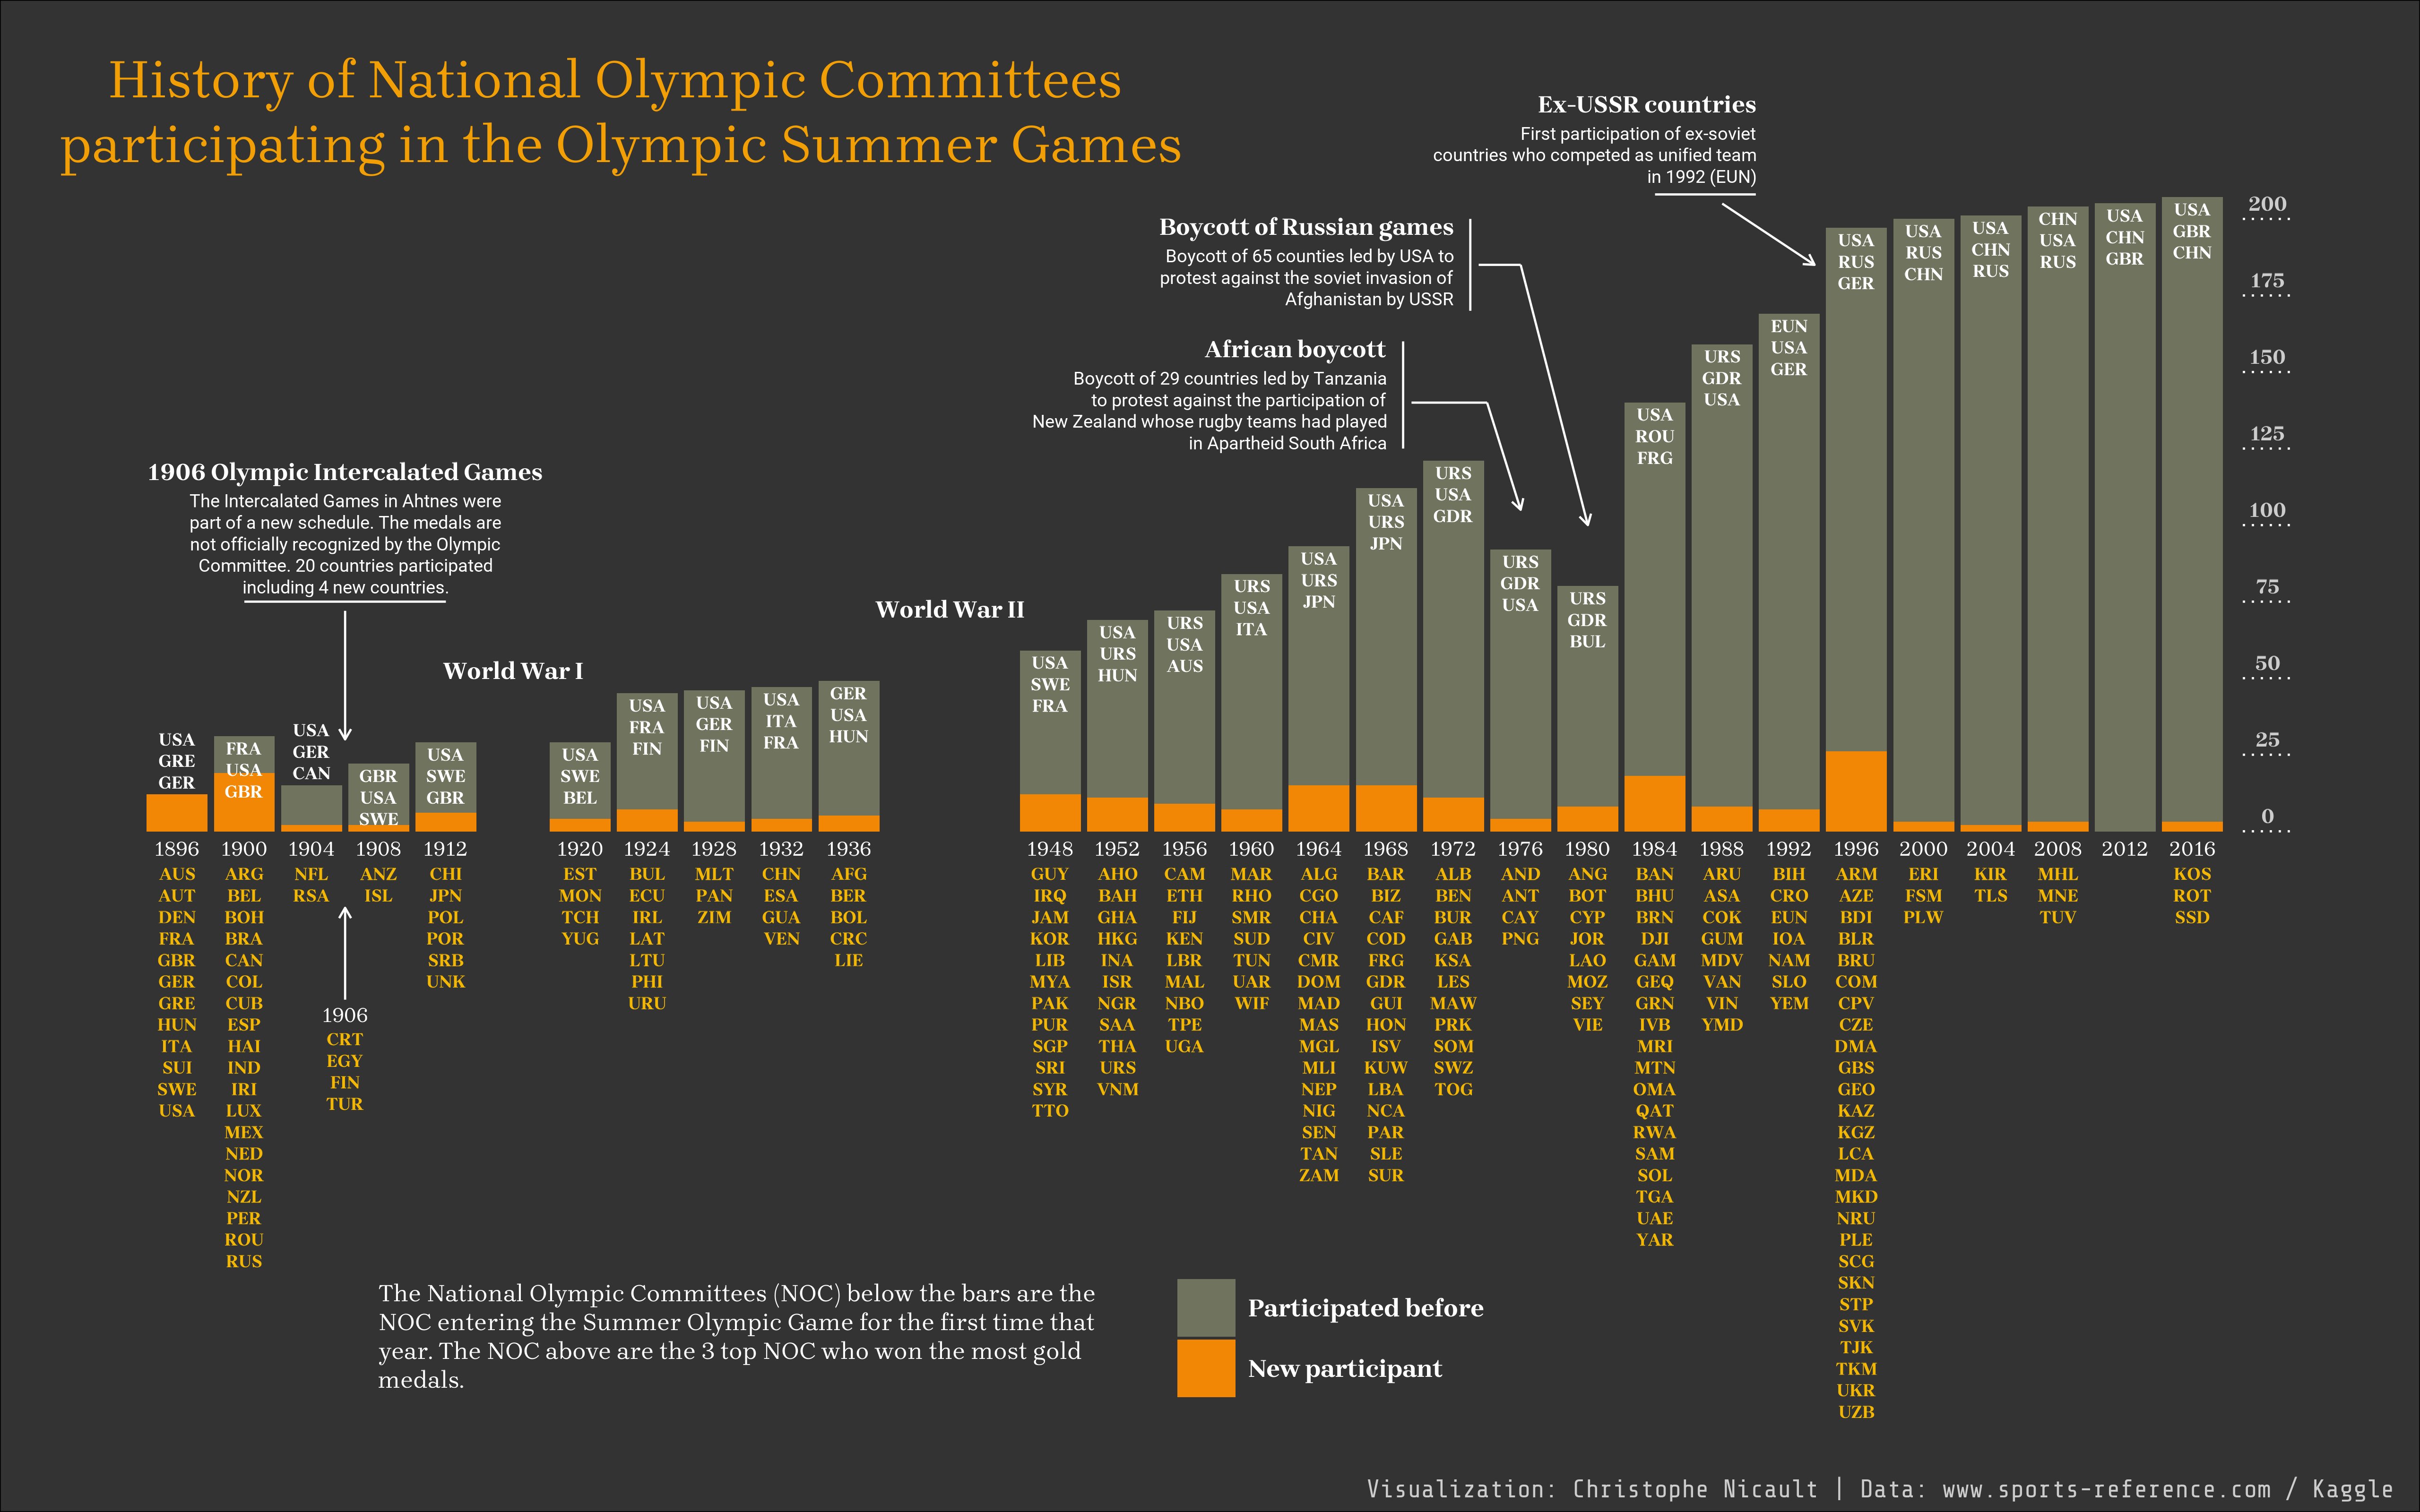 Historique des Comités Nationaux Olympiques participant aux Jeux Olympiques d’été